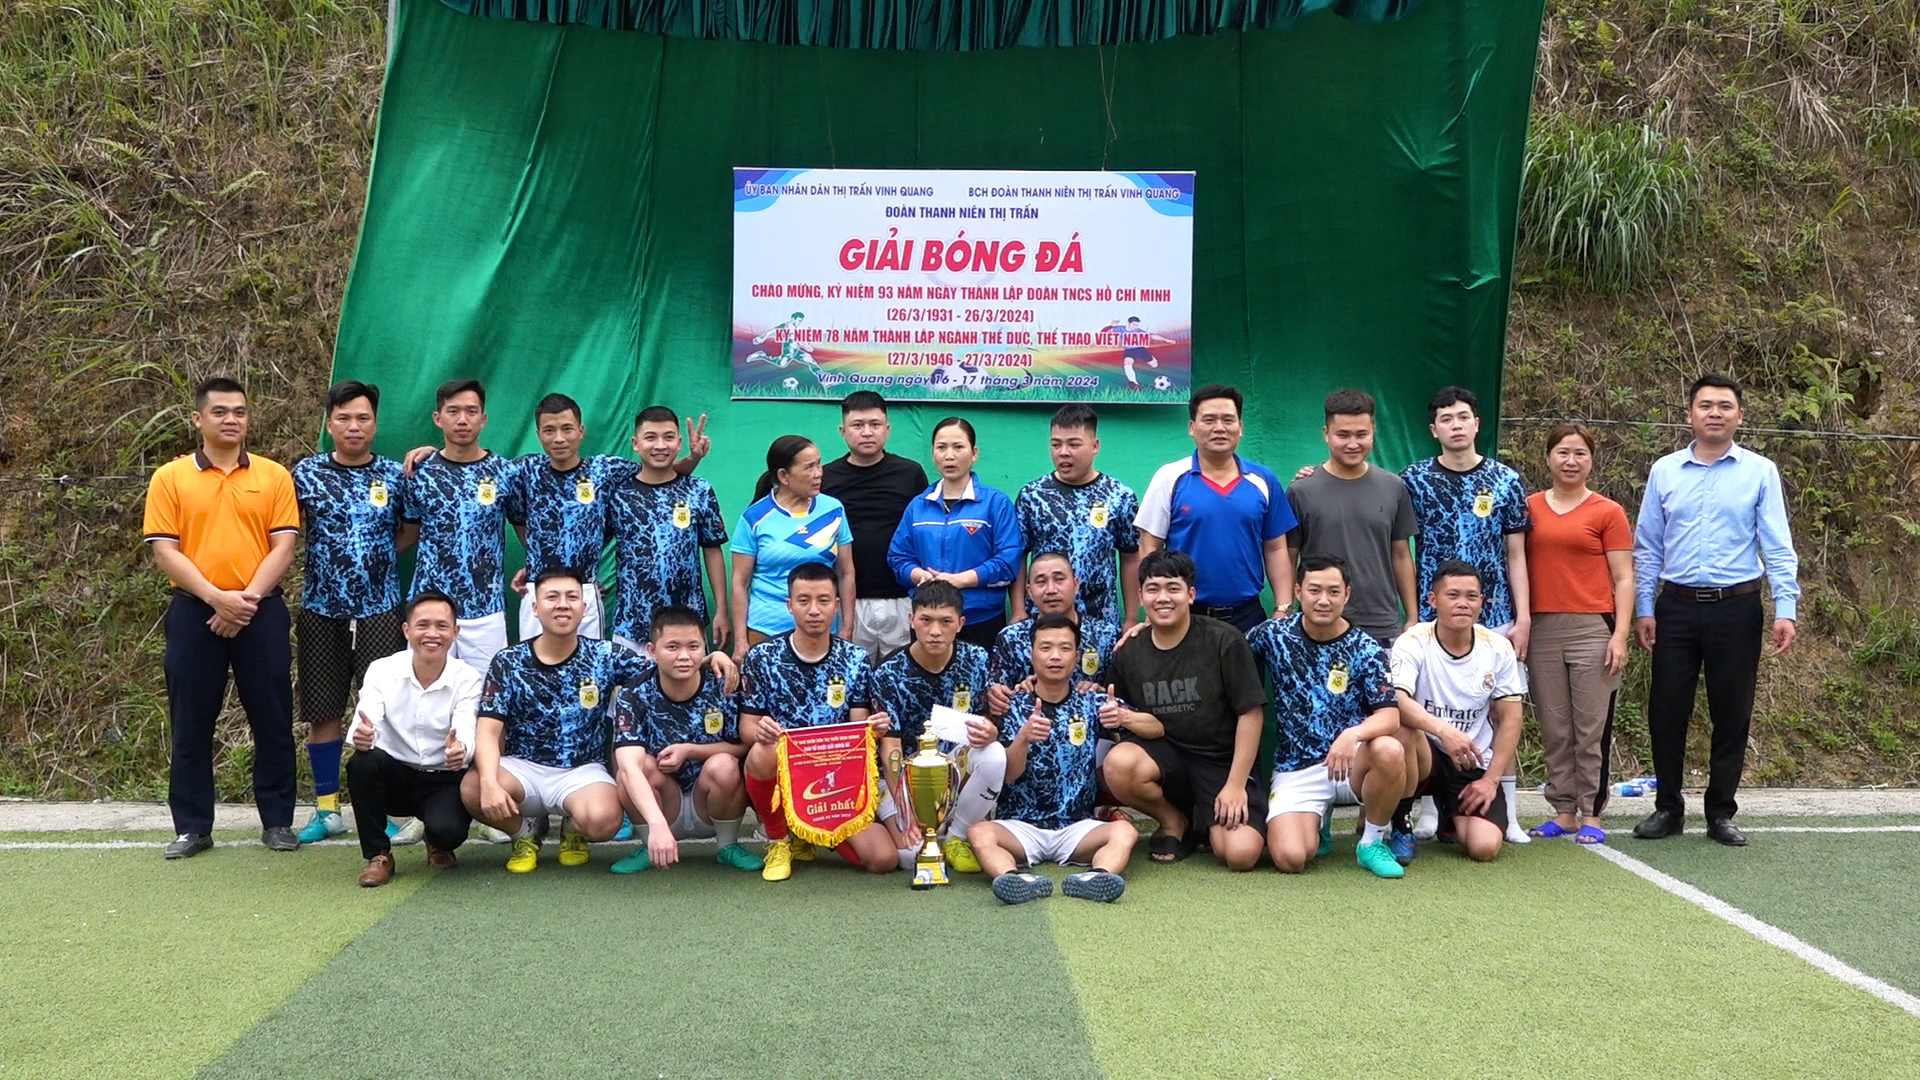 Thị trấn Vinh Quang tổ chức thành công giải bóng đá chào mừng thành lập đoàn 26/3.